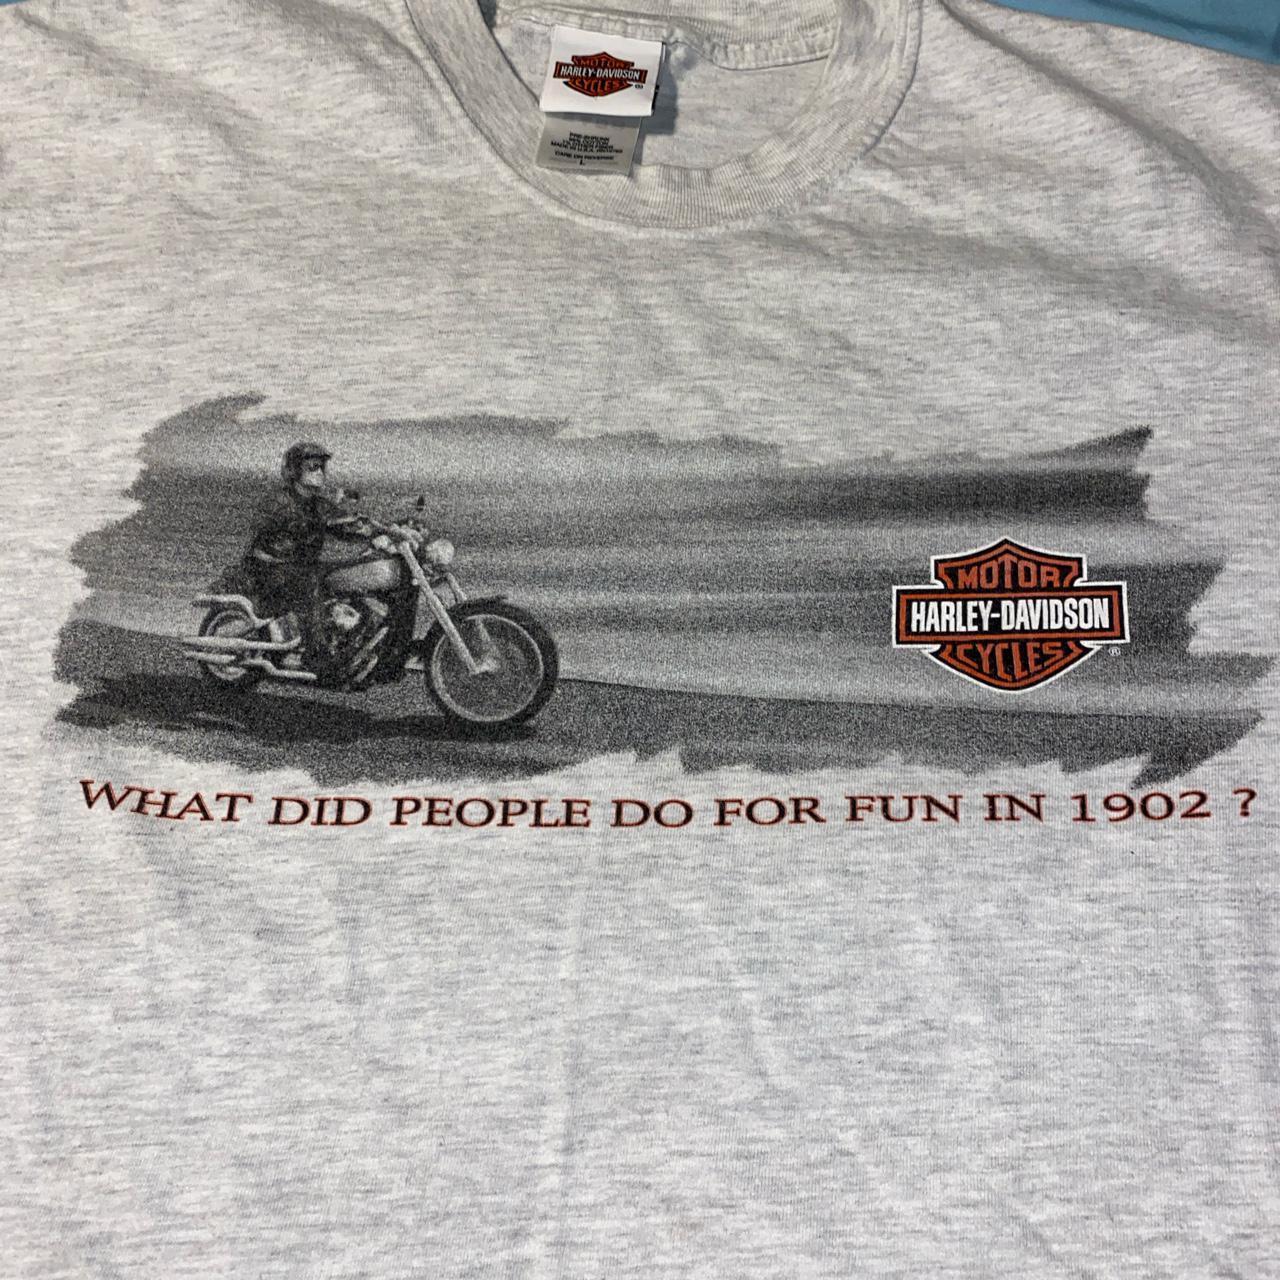 Product Image 4 - Harley Davidson Kenosha WI T-Shirt

Size